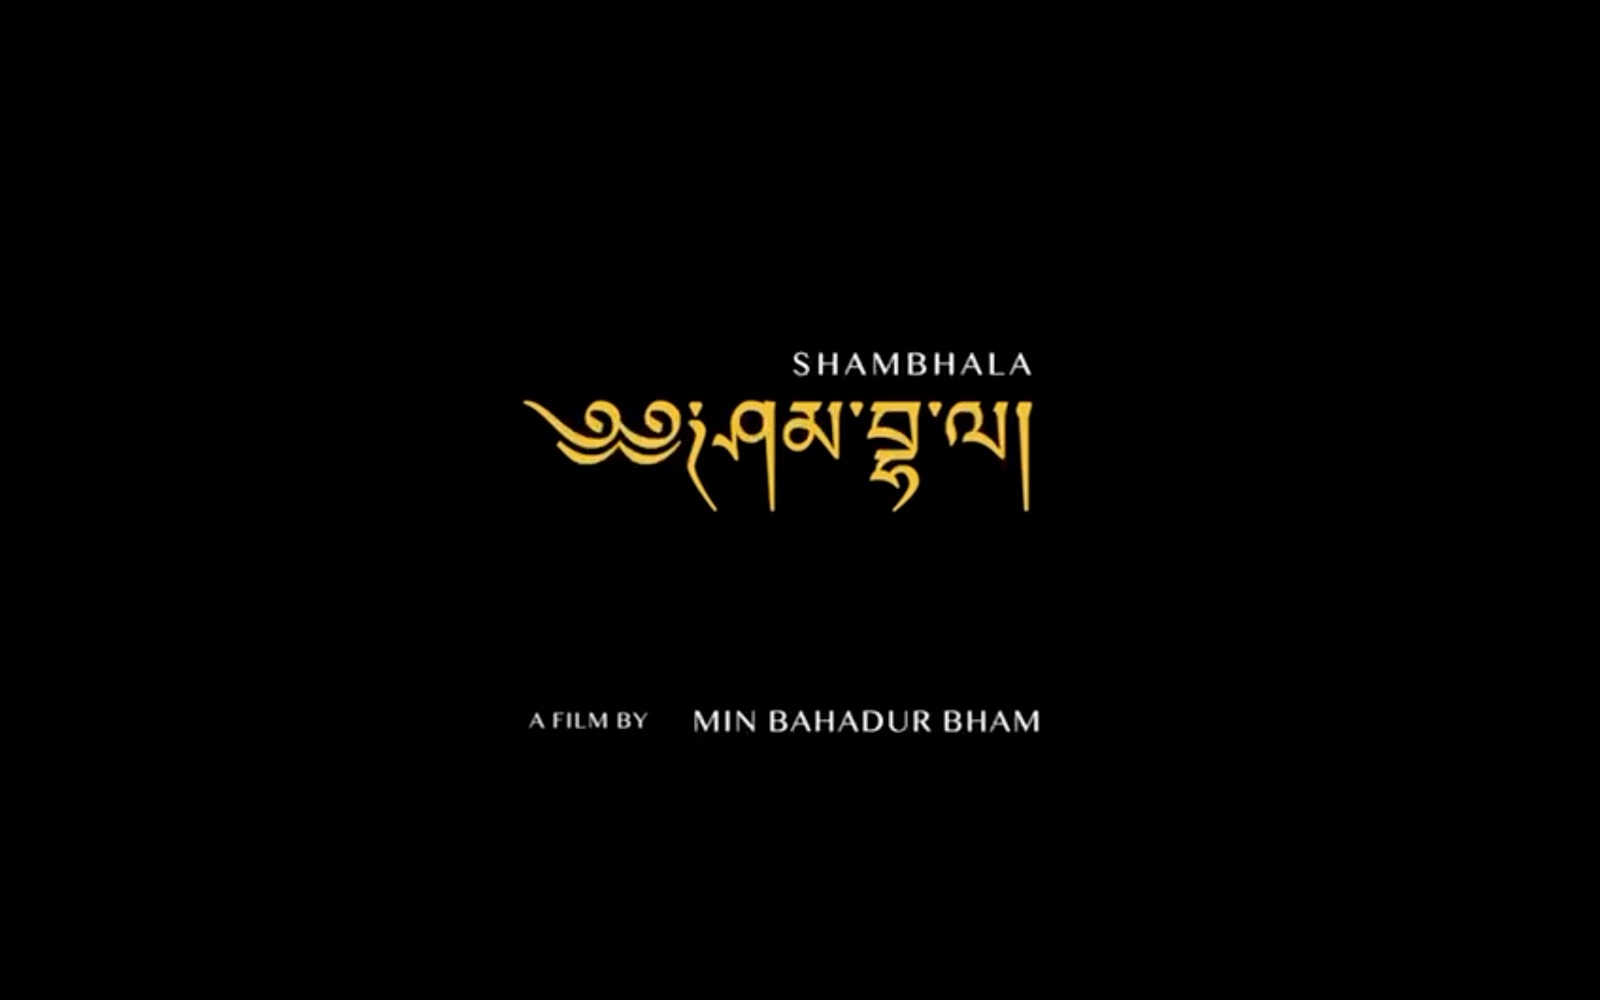 Bham’s Shambhala selected for Berlin Film Festival